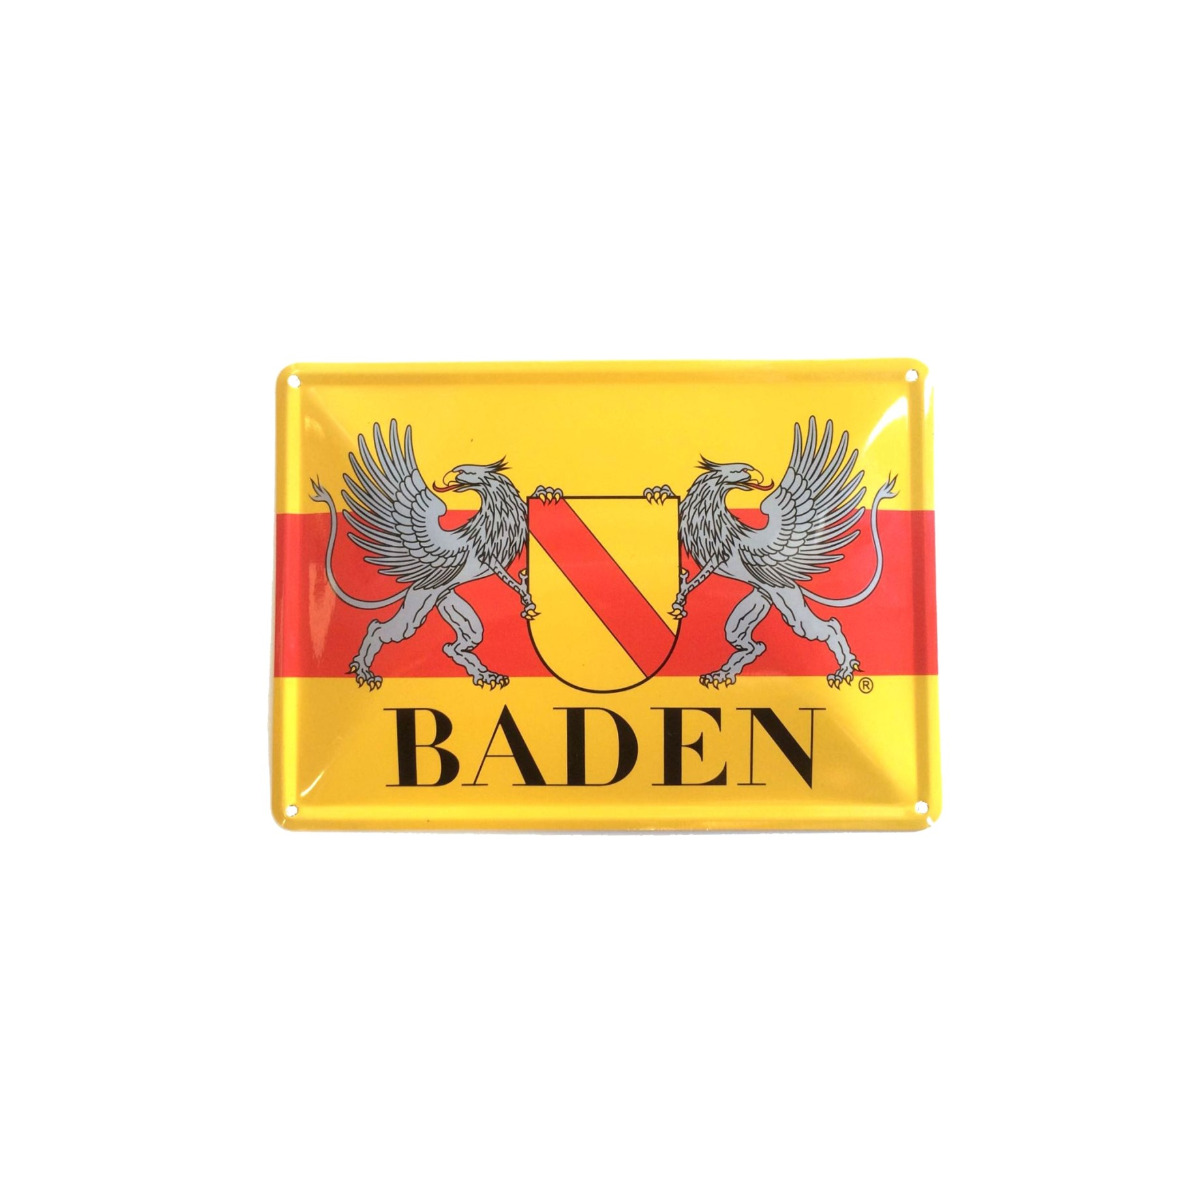 Blechschild "Baden" (Wappen mit Greifen)